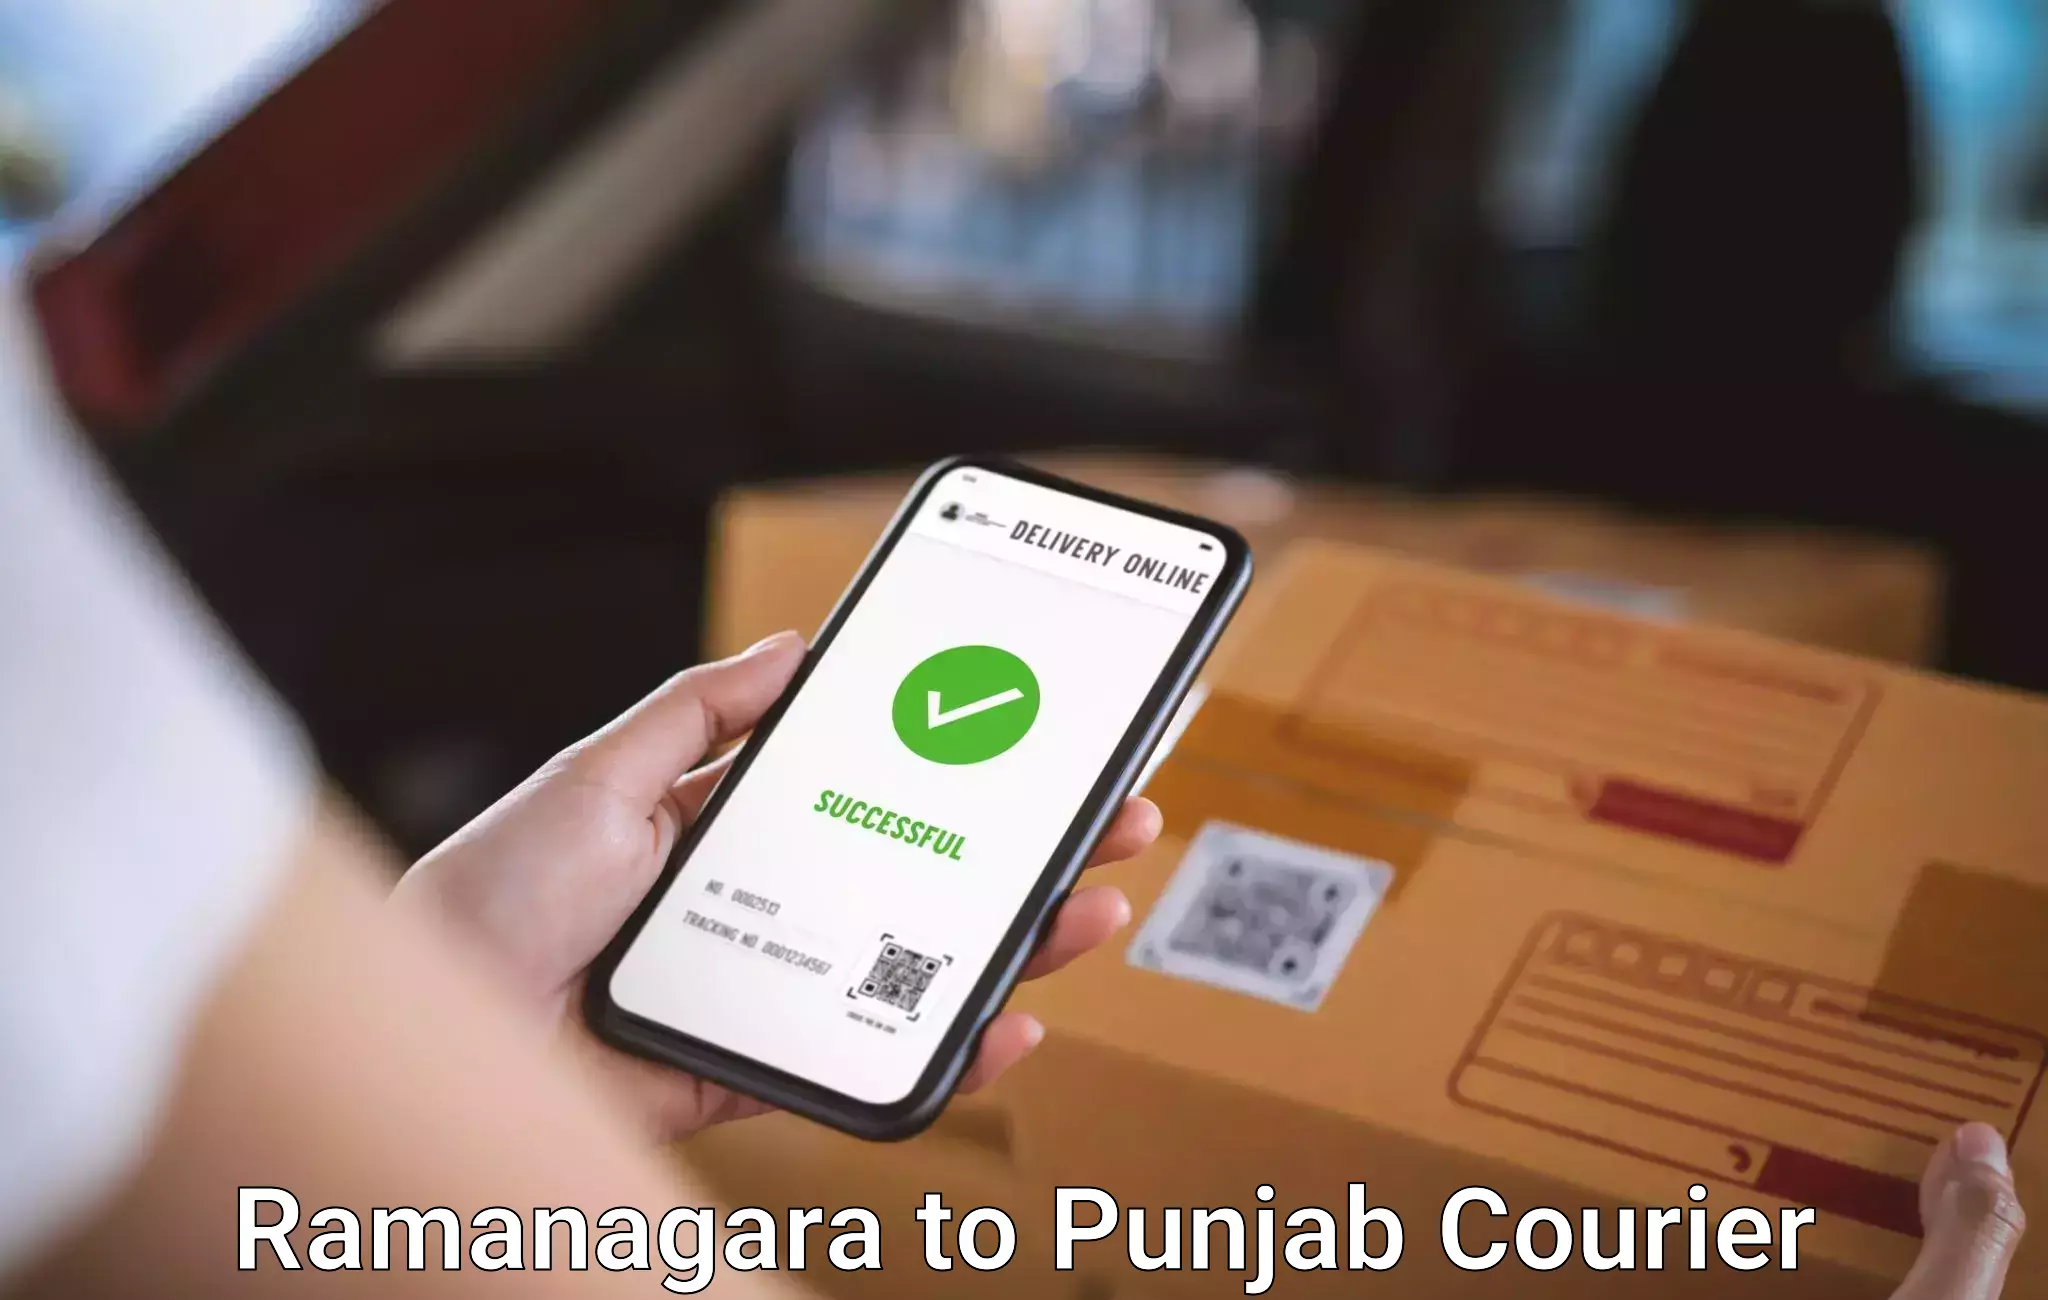 Quick luggage shipment Ramanagara to Punjab